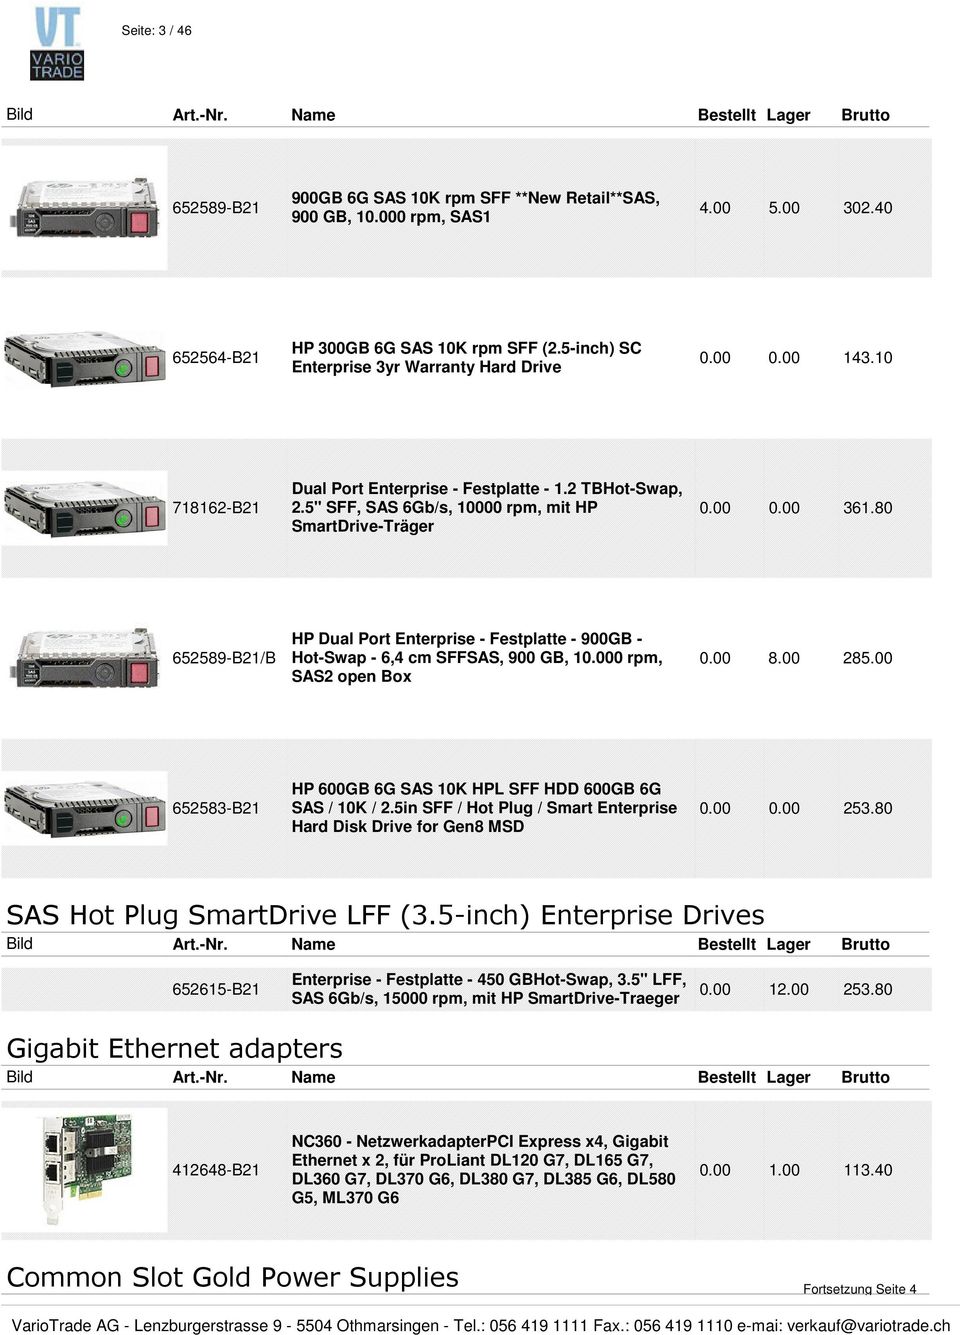 80 652589-B21/B HP Dual Port Enterprise - Festplatte - 900GB - Hot-Swap - 6,4 cm SFFSAS, 900 GB, 10.000 rpm, SAS2 open Box 0.00 8.00 285.